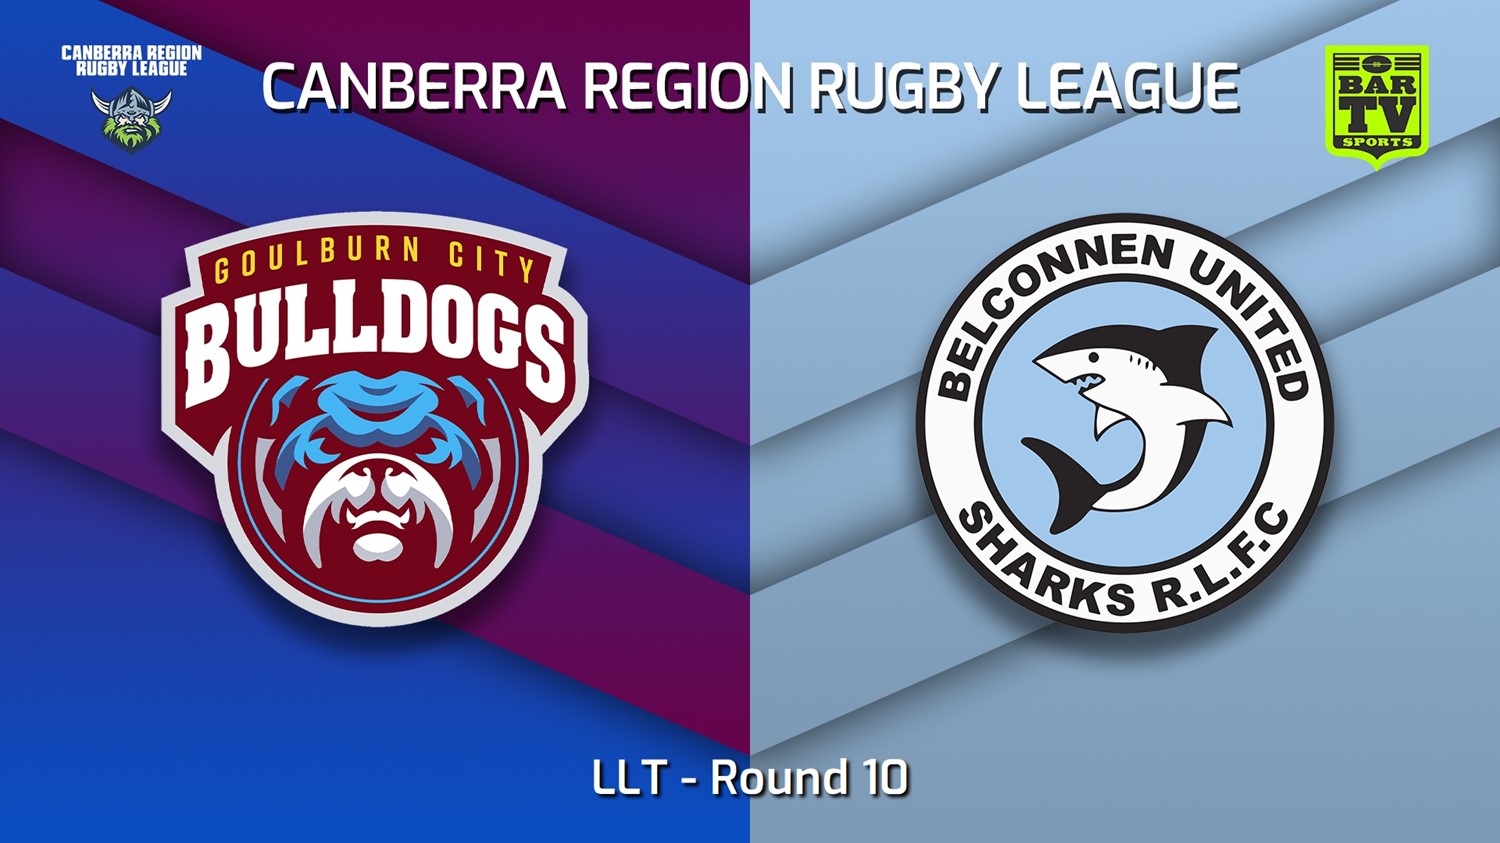 220626-Canberra Round 10 - LLT - Goulburn City Bulldogs v Belconnen United Sharks Slate Image